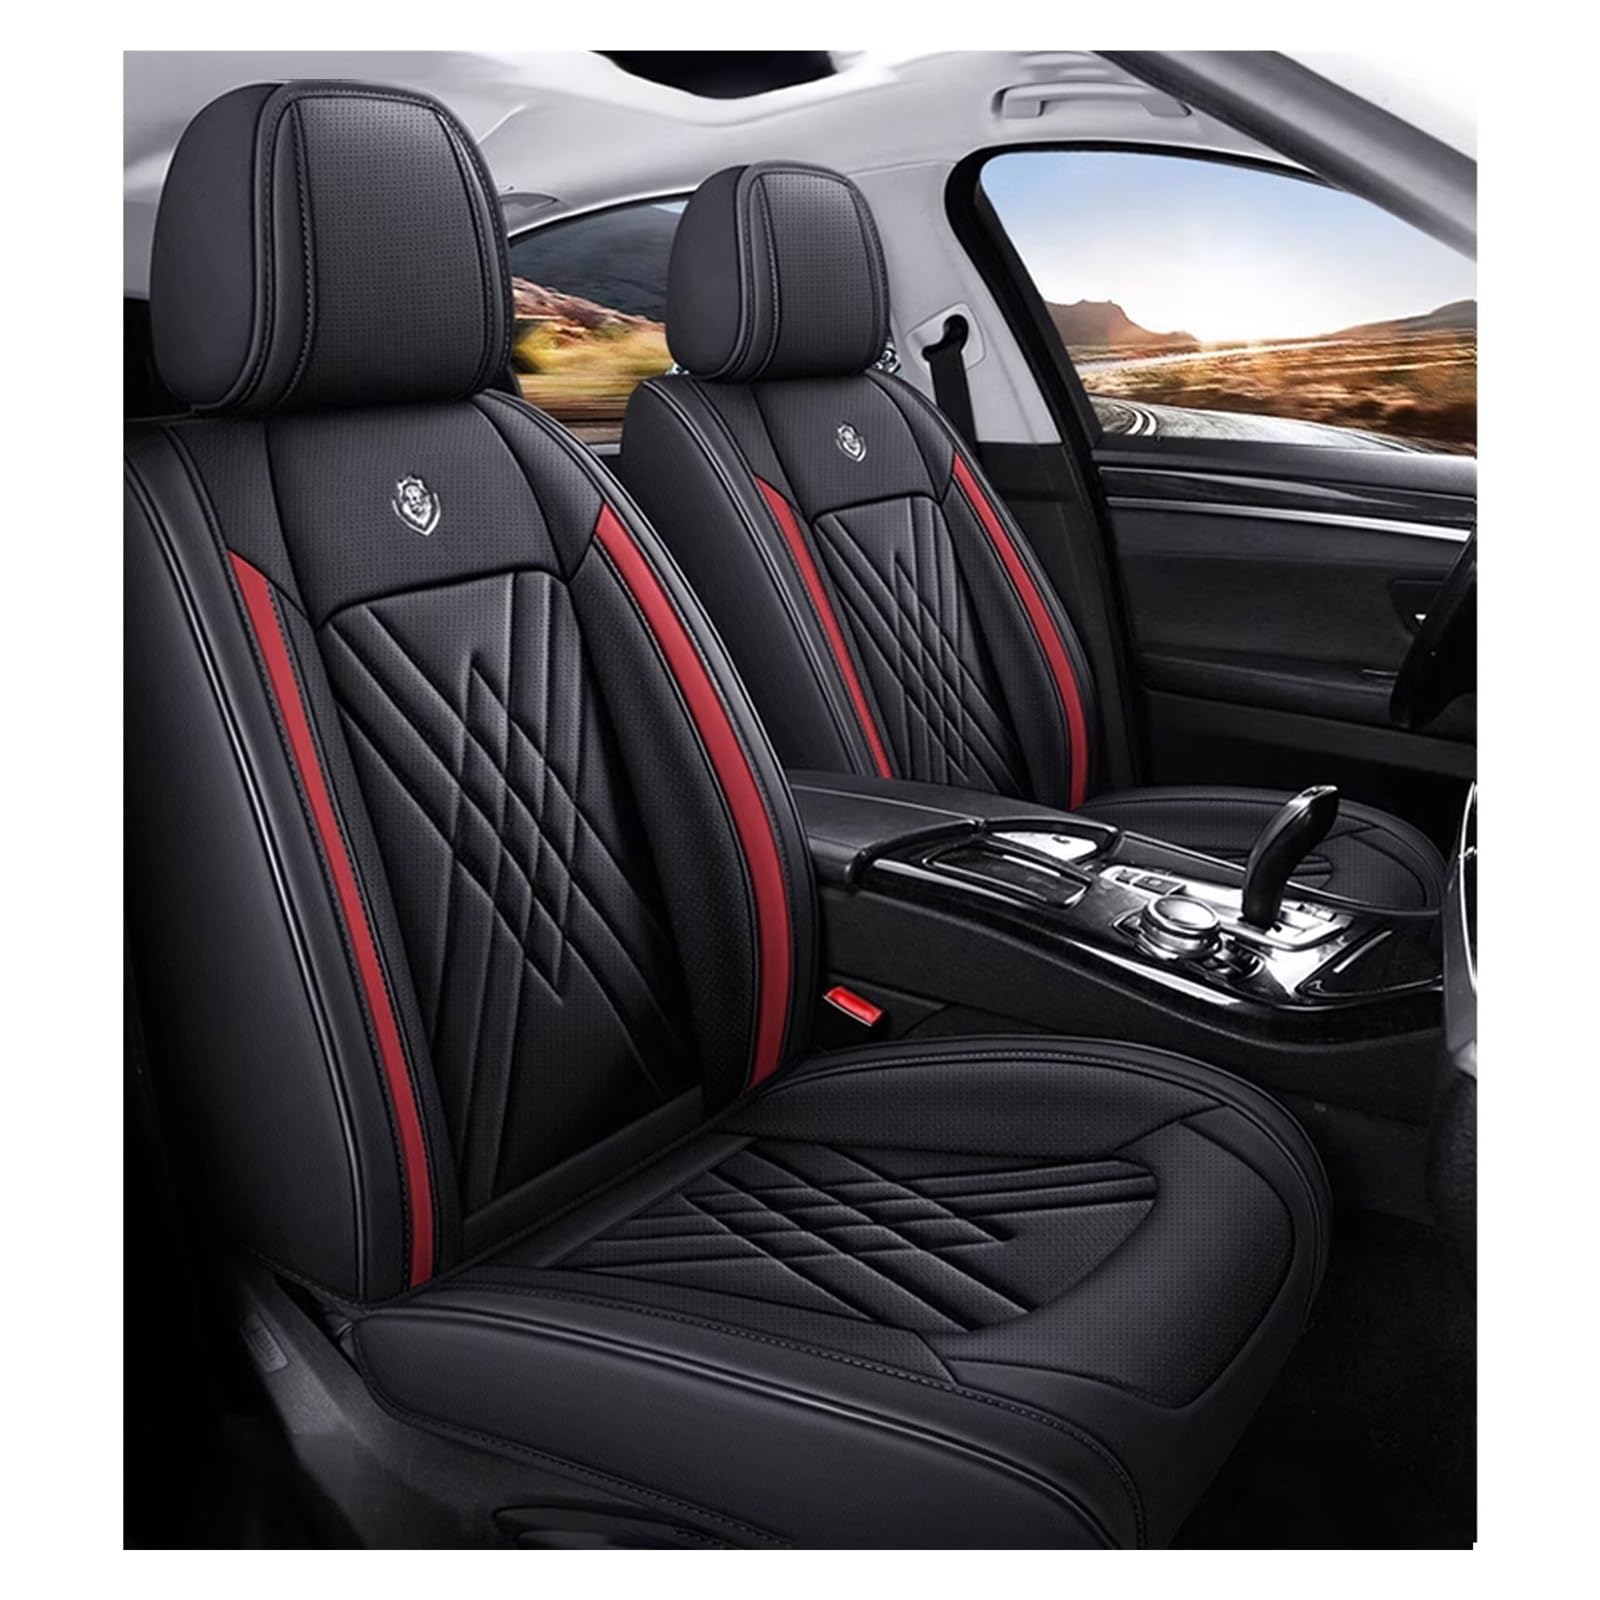 ZARUXCHA Universal-Sitzbezug Komplett-Set Für Honda Accord VII 2002-2005 AutositzbezüGe Set Leder, 5-Sitze Universal-SitzbezüGe Auto Komplettset(E(Dark Red)) von ZARUXCHA